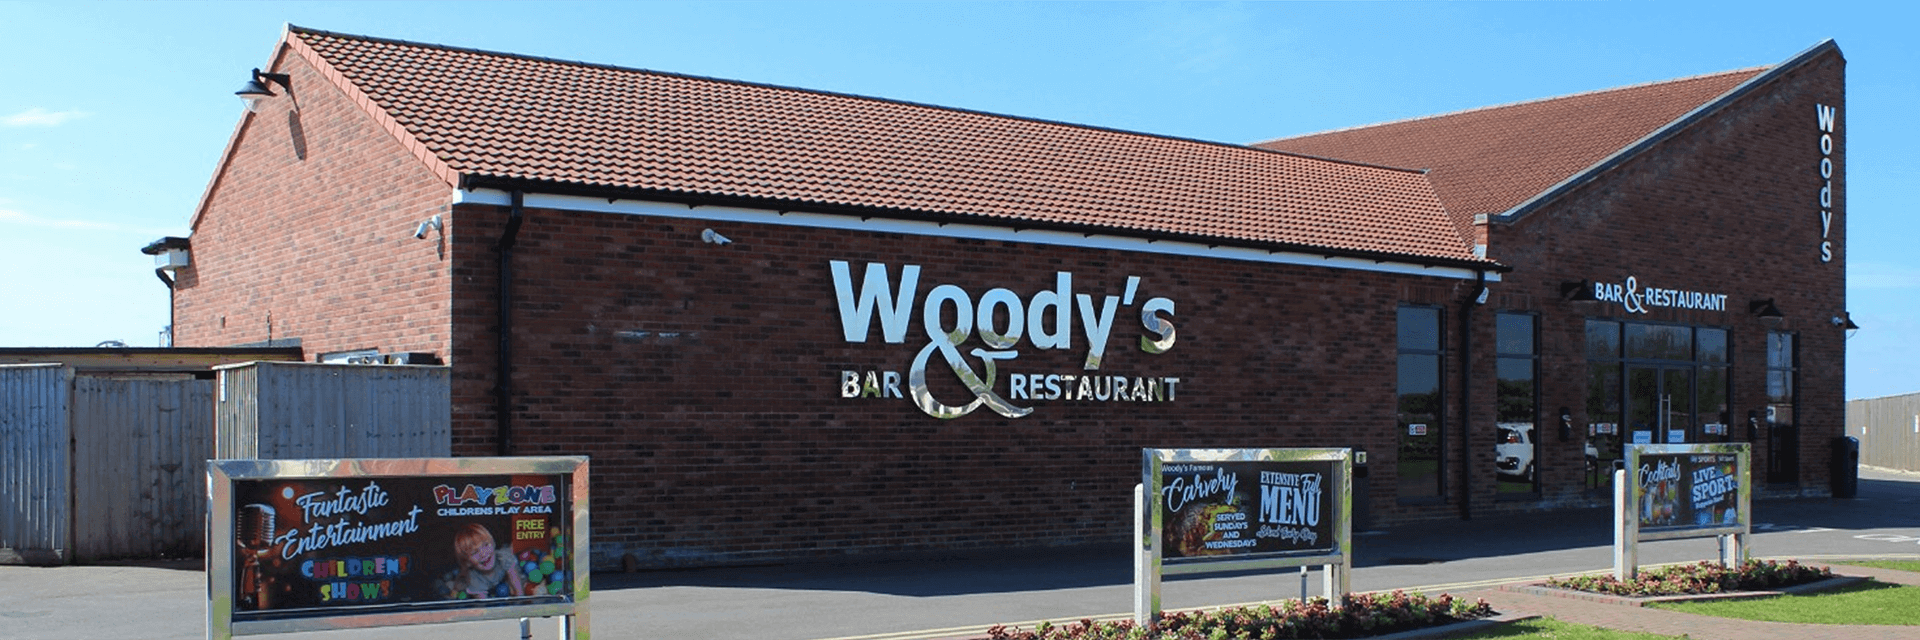 Woody's Bar & Restaurant, Ingoldmells, Skegness